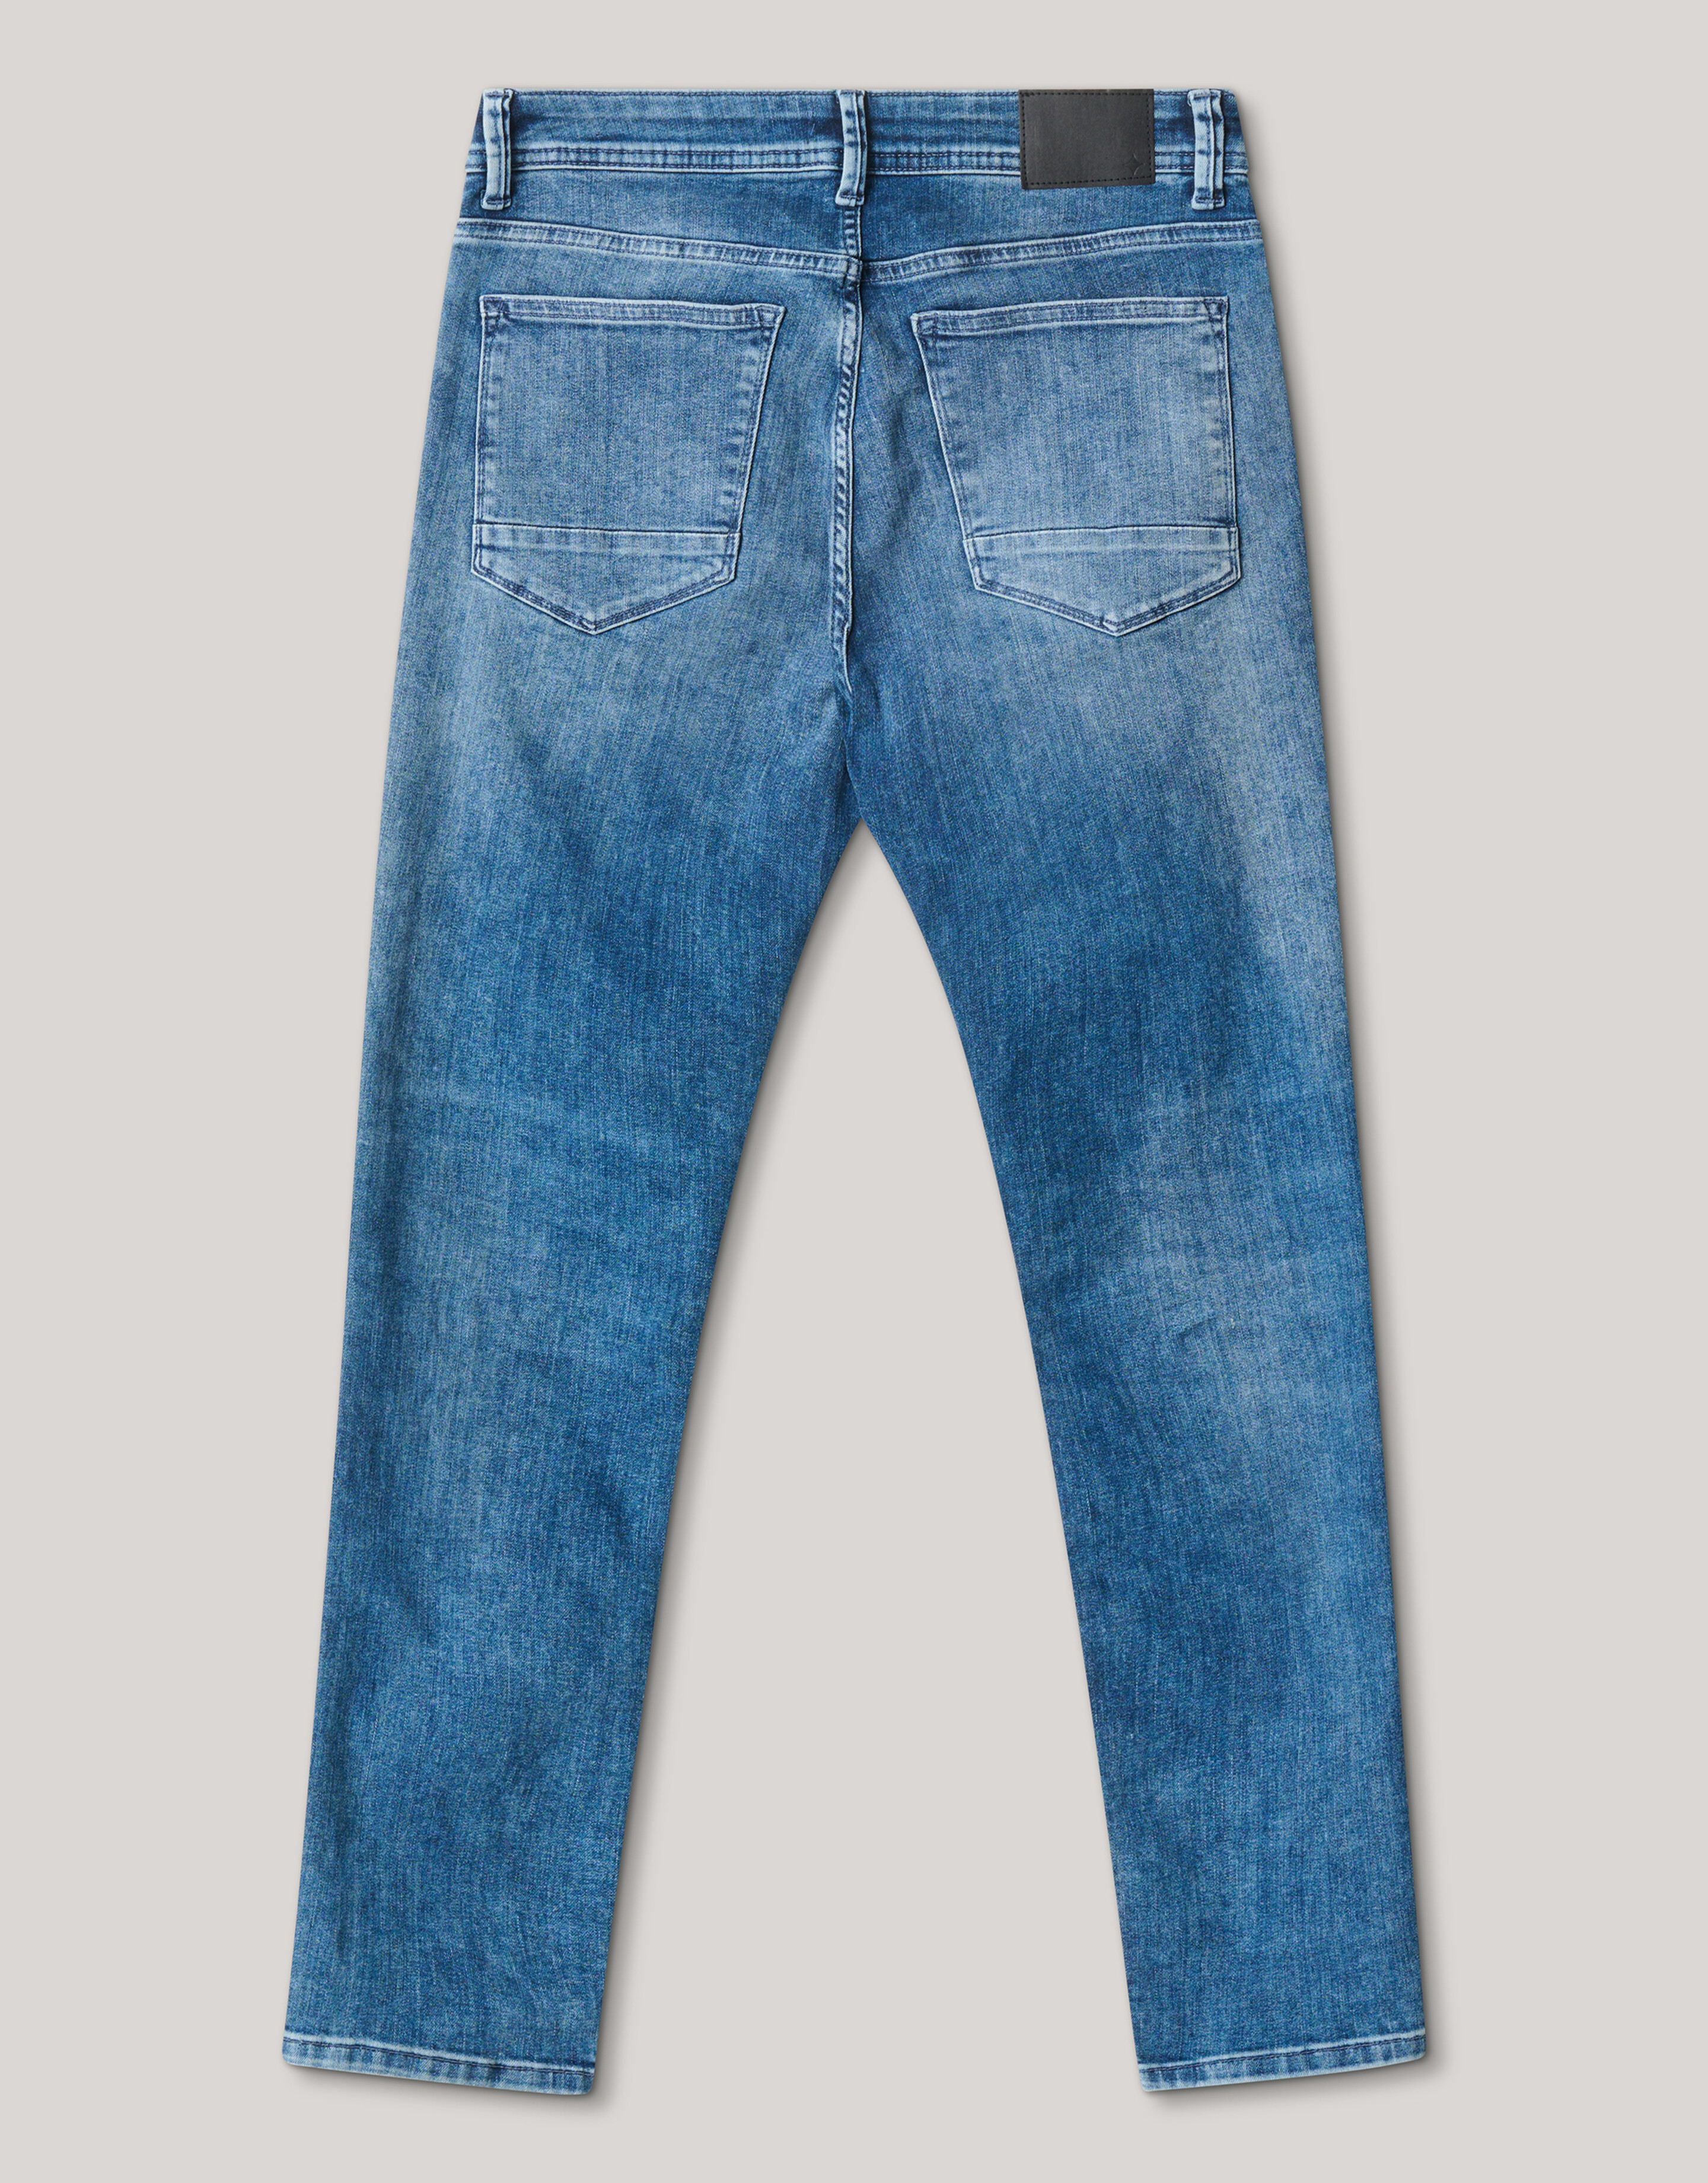 Skinny Jeans Blau Länge 32 Refill